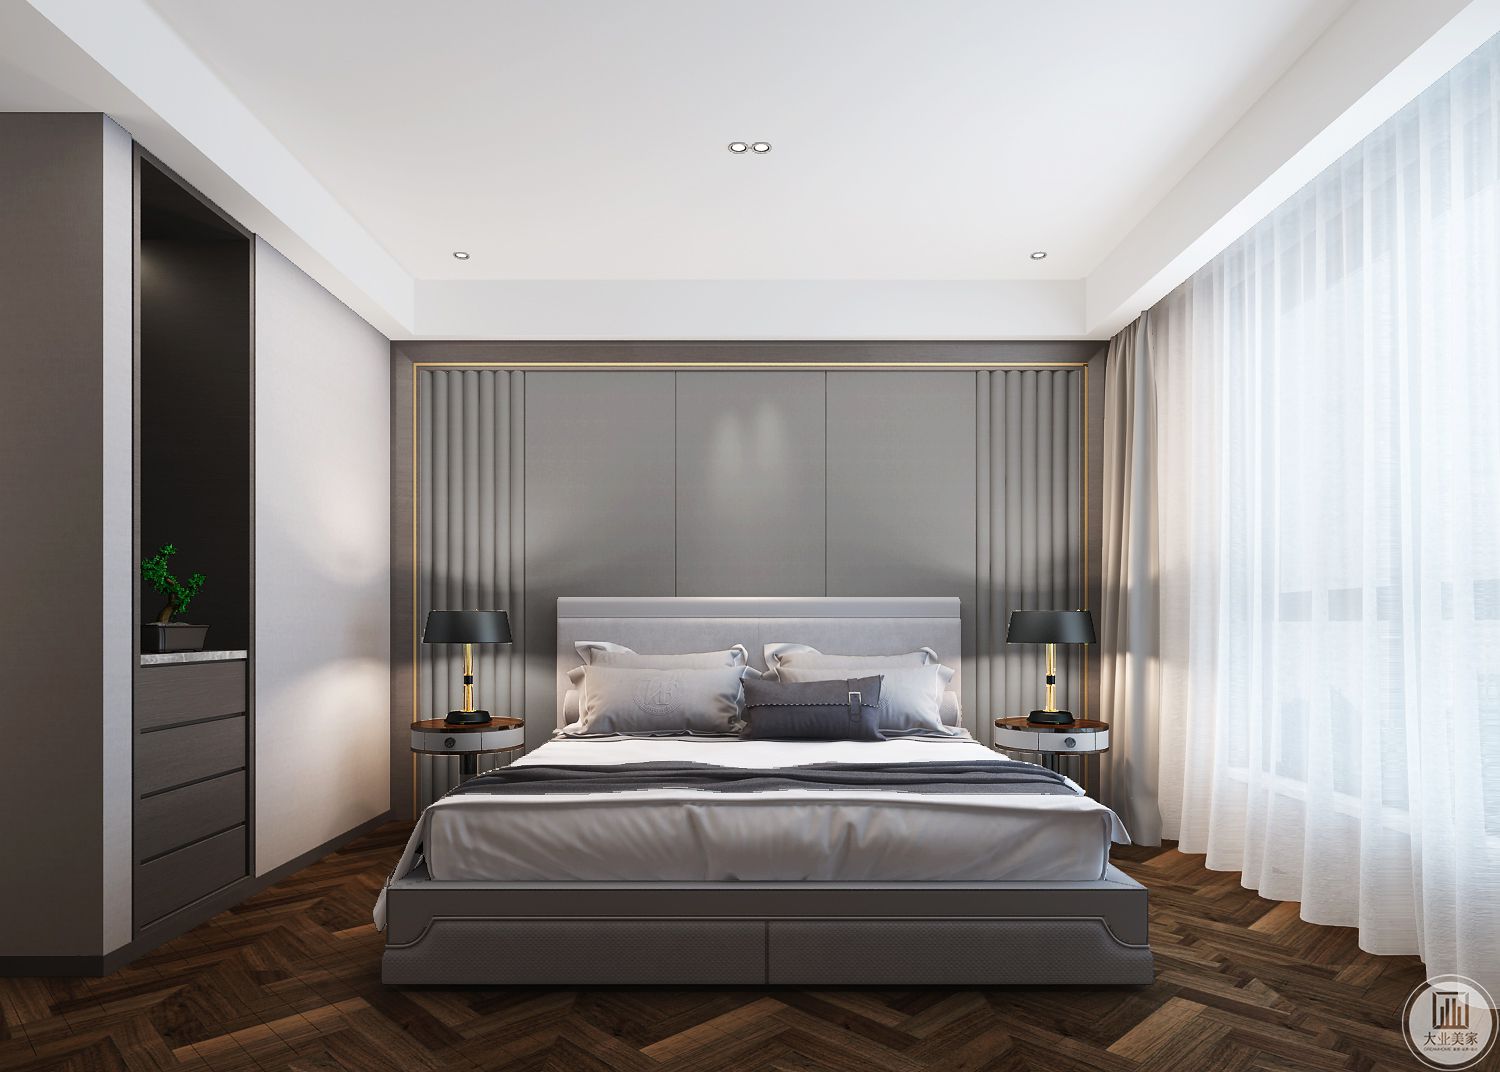 卧室效果图-卧室整体用的是木地板铺贴，更加增添了卧室的舒适度，床头背景墙用的是灰色系的护墙板，整体卧室更彰显现代简约的精致与个性，简约而不简单。